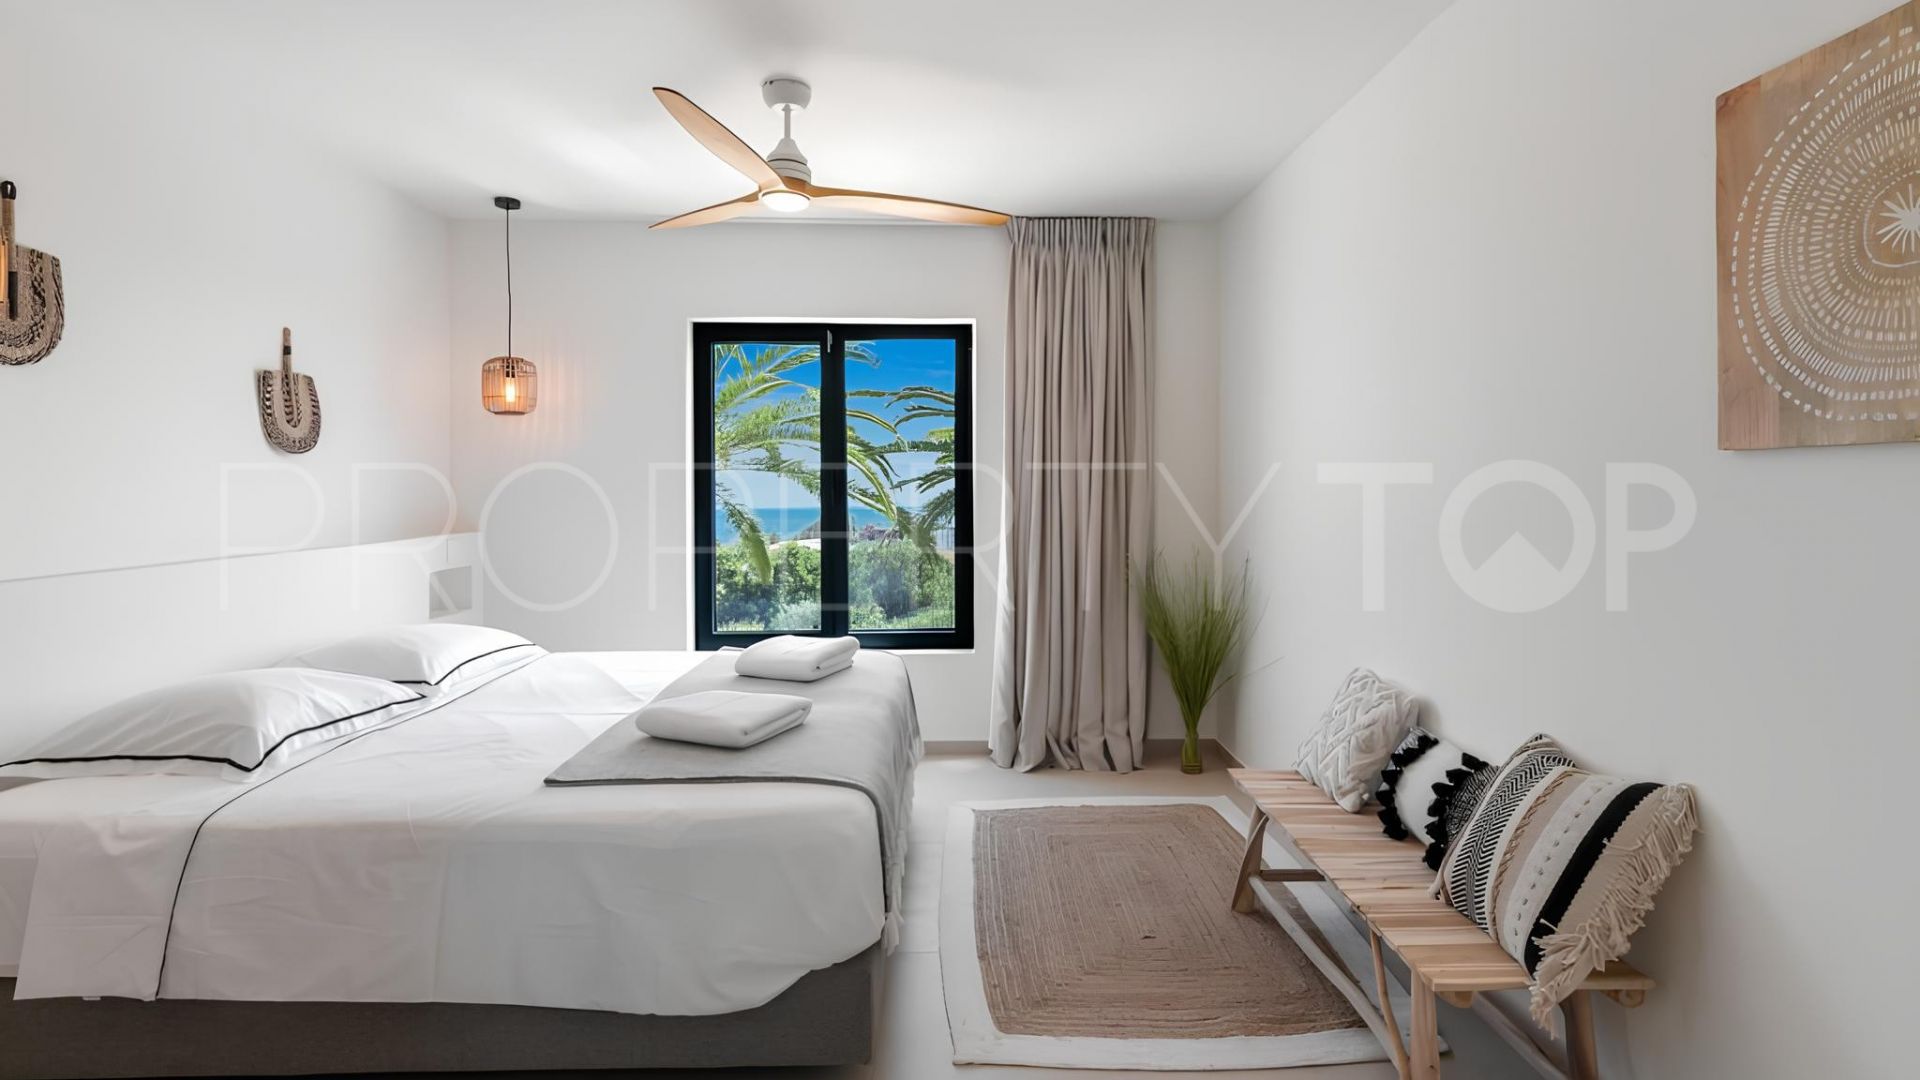 5 bedrooms villa in Estepona for sale